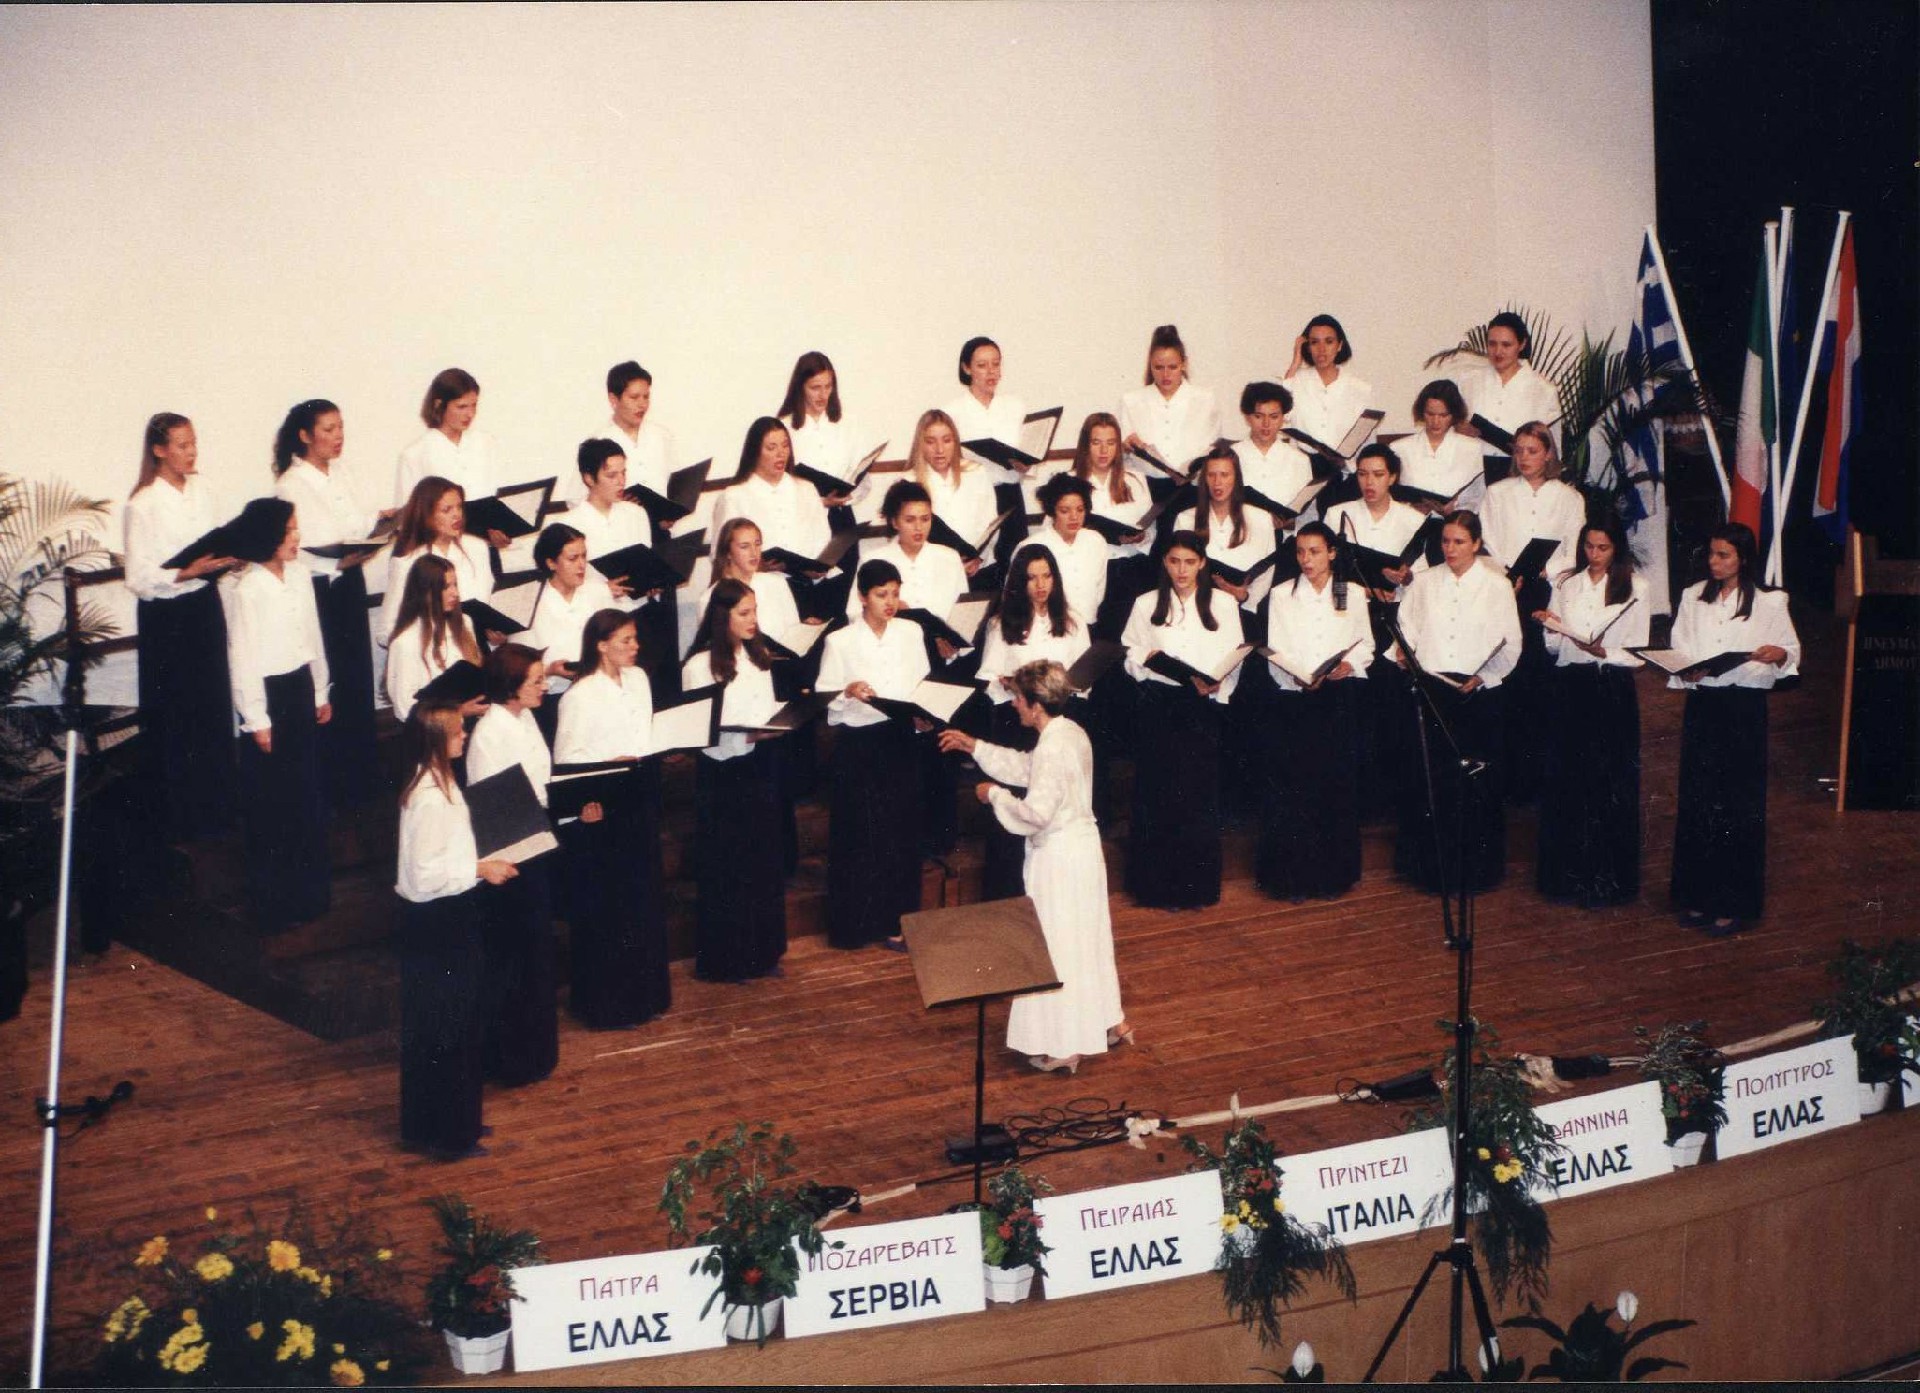 Међународни фестивал хорова Јањина, Грчка 1997.